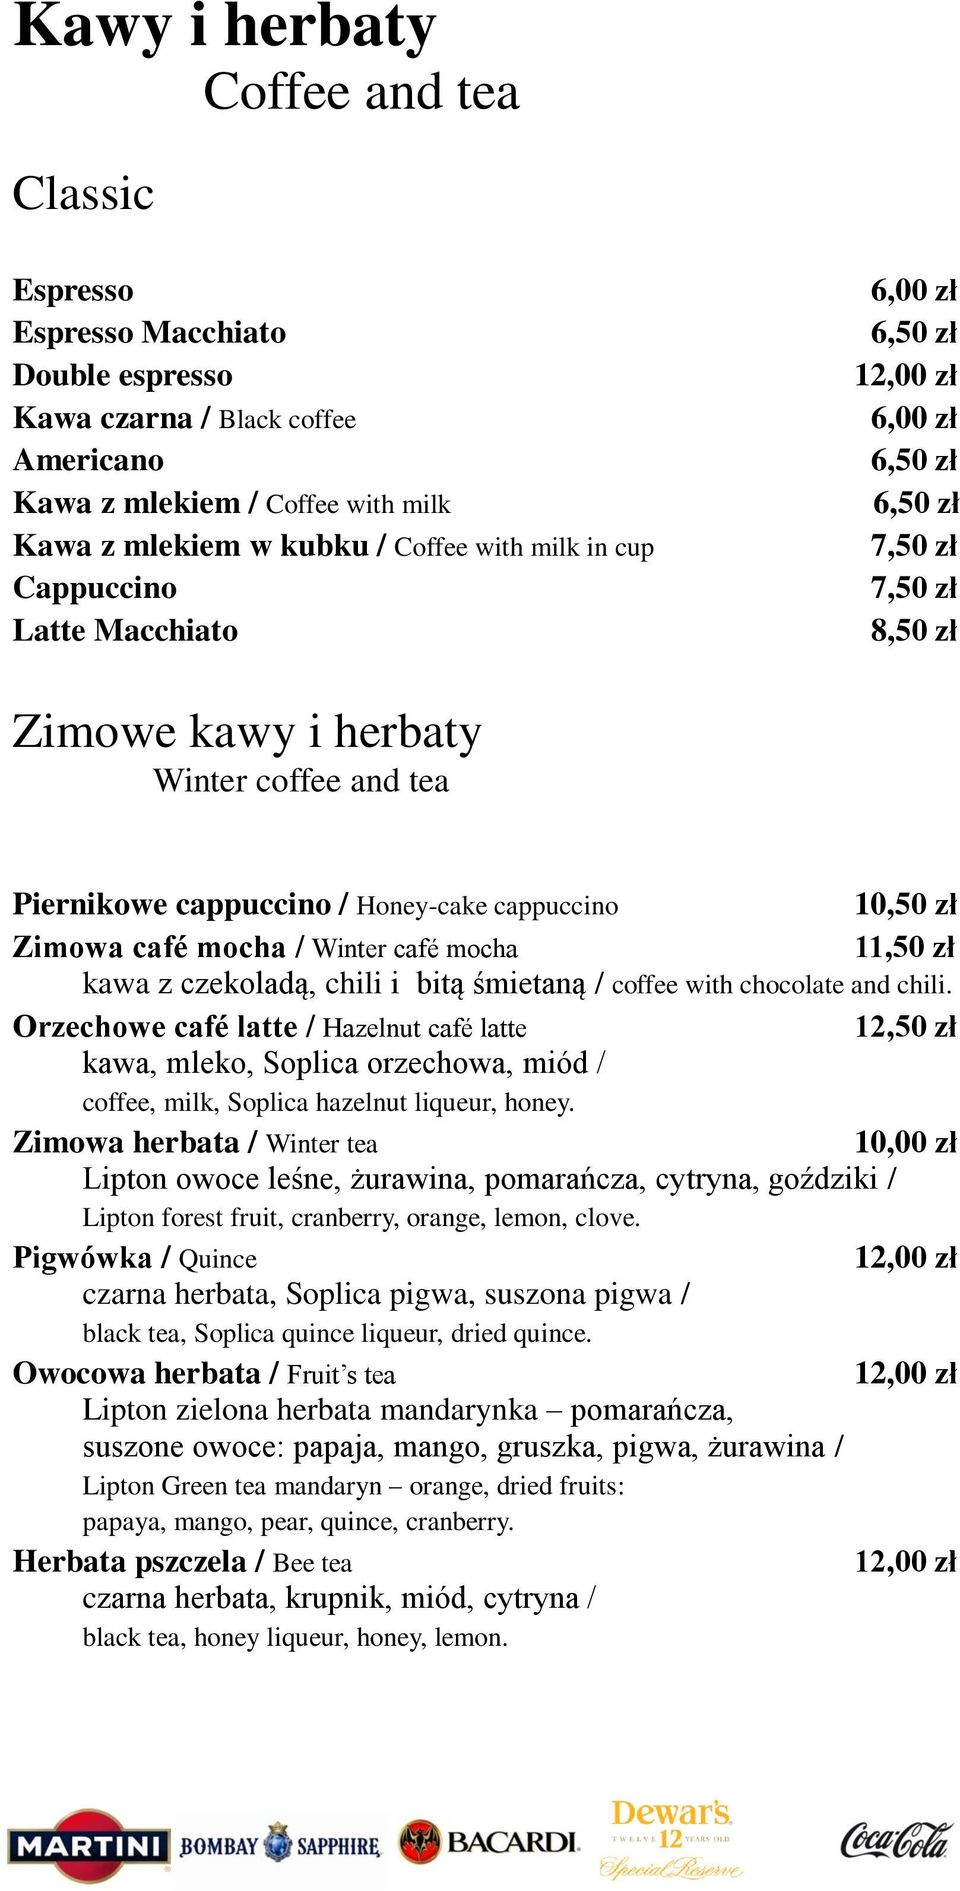 Zimowa café mocha / Winter café mocha 11,50 zł kawa z czekoladą, chili i bitą śmietaną / coffee with chocolate and chili.